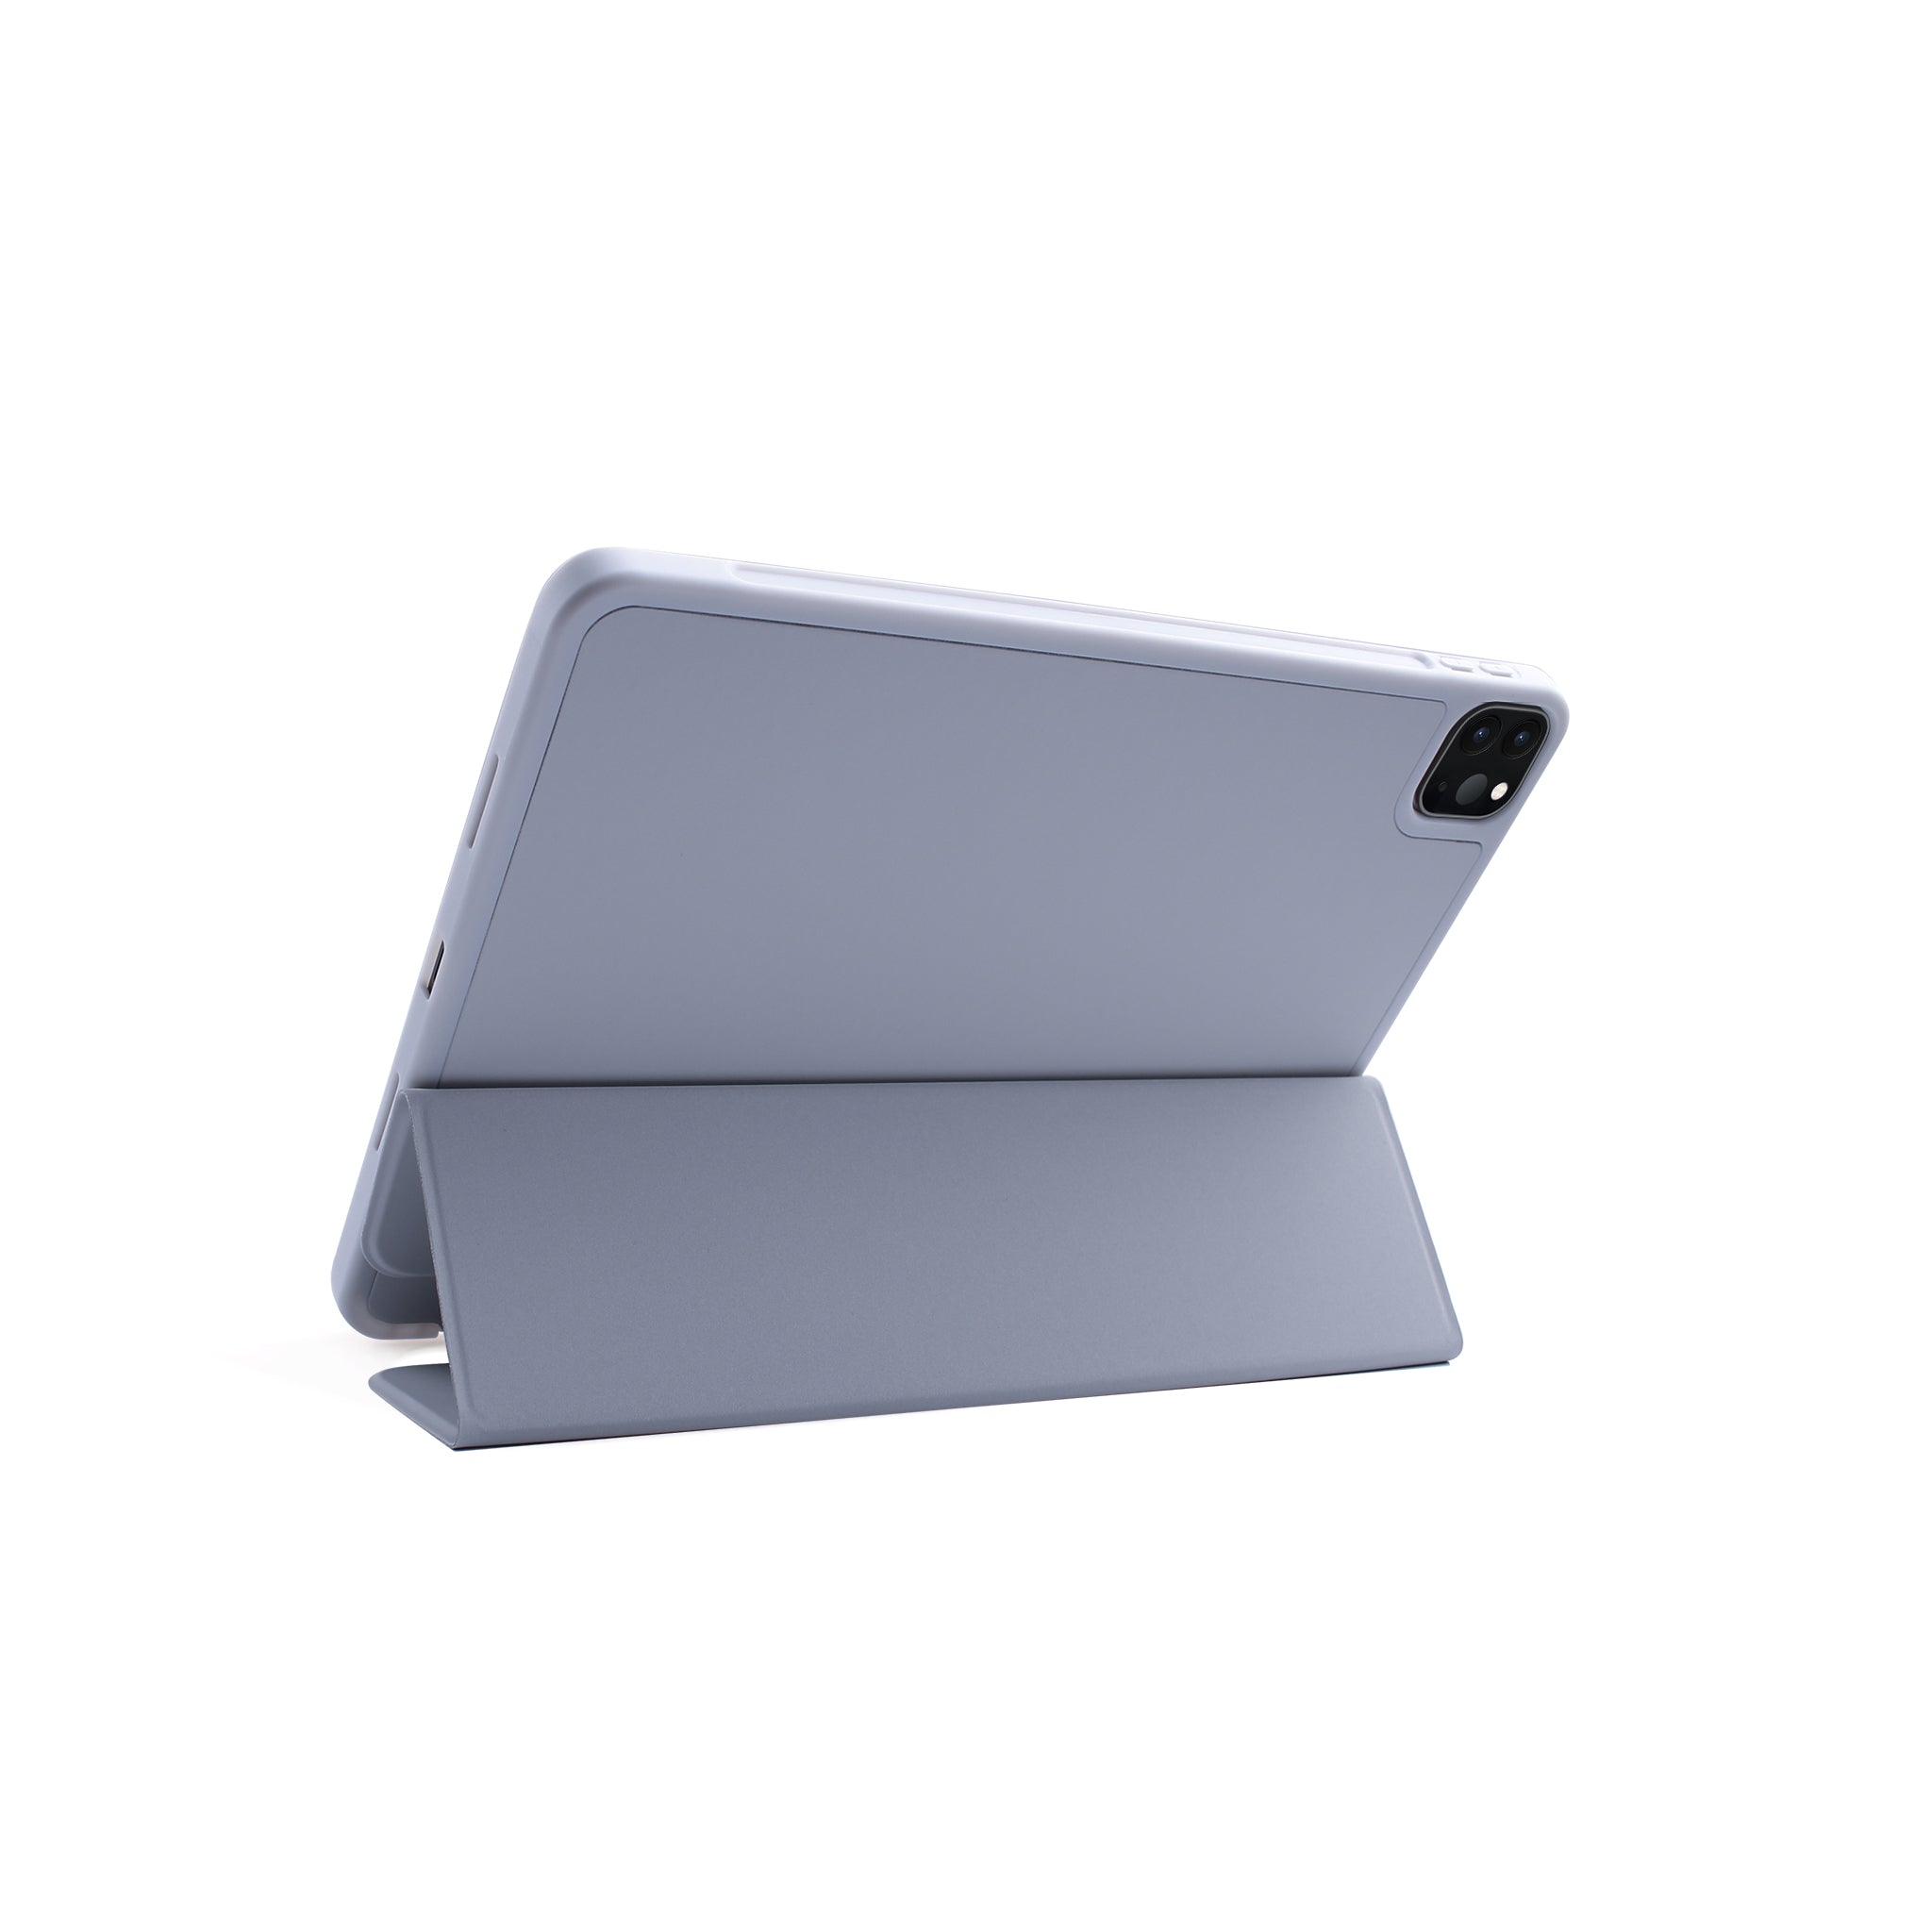 JCPal JCP5419 Durapro Protective Folio Case for iPad Mini 2021 Model Lavender Purple